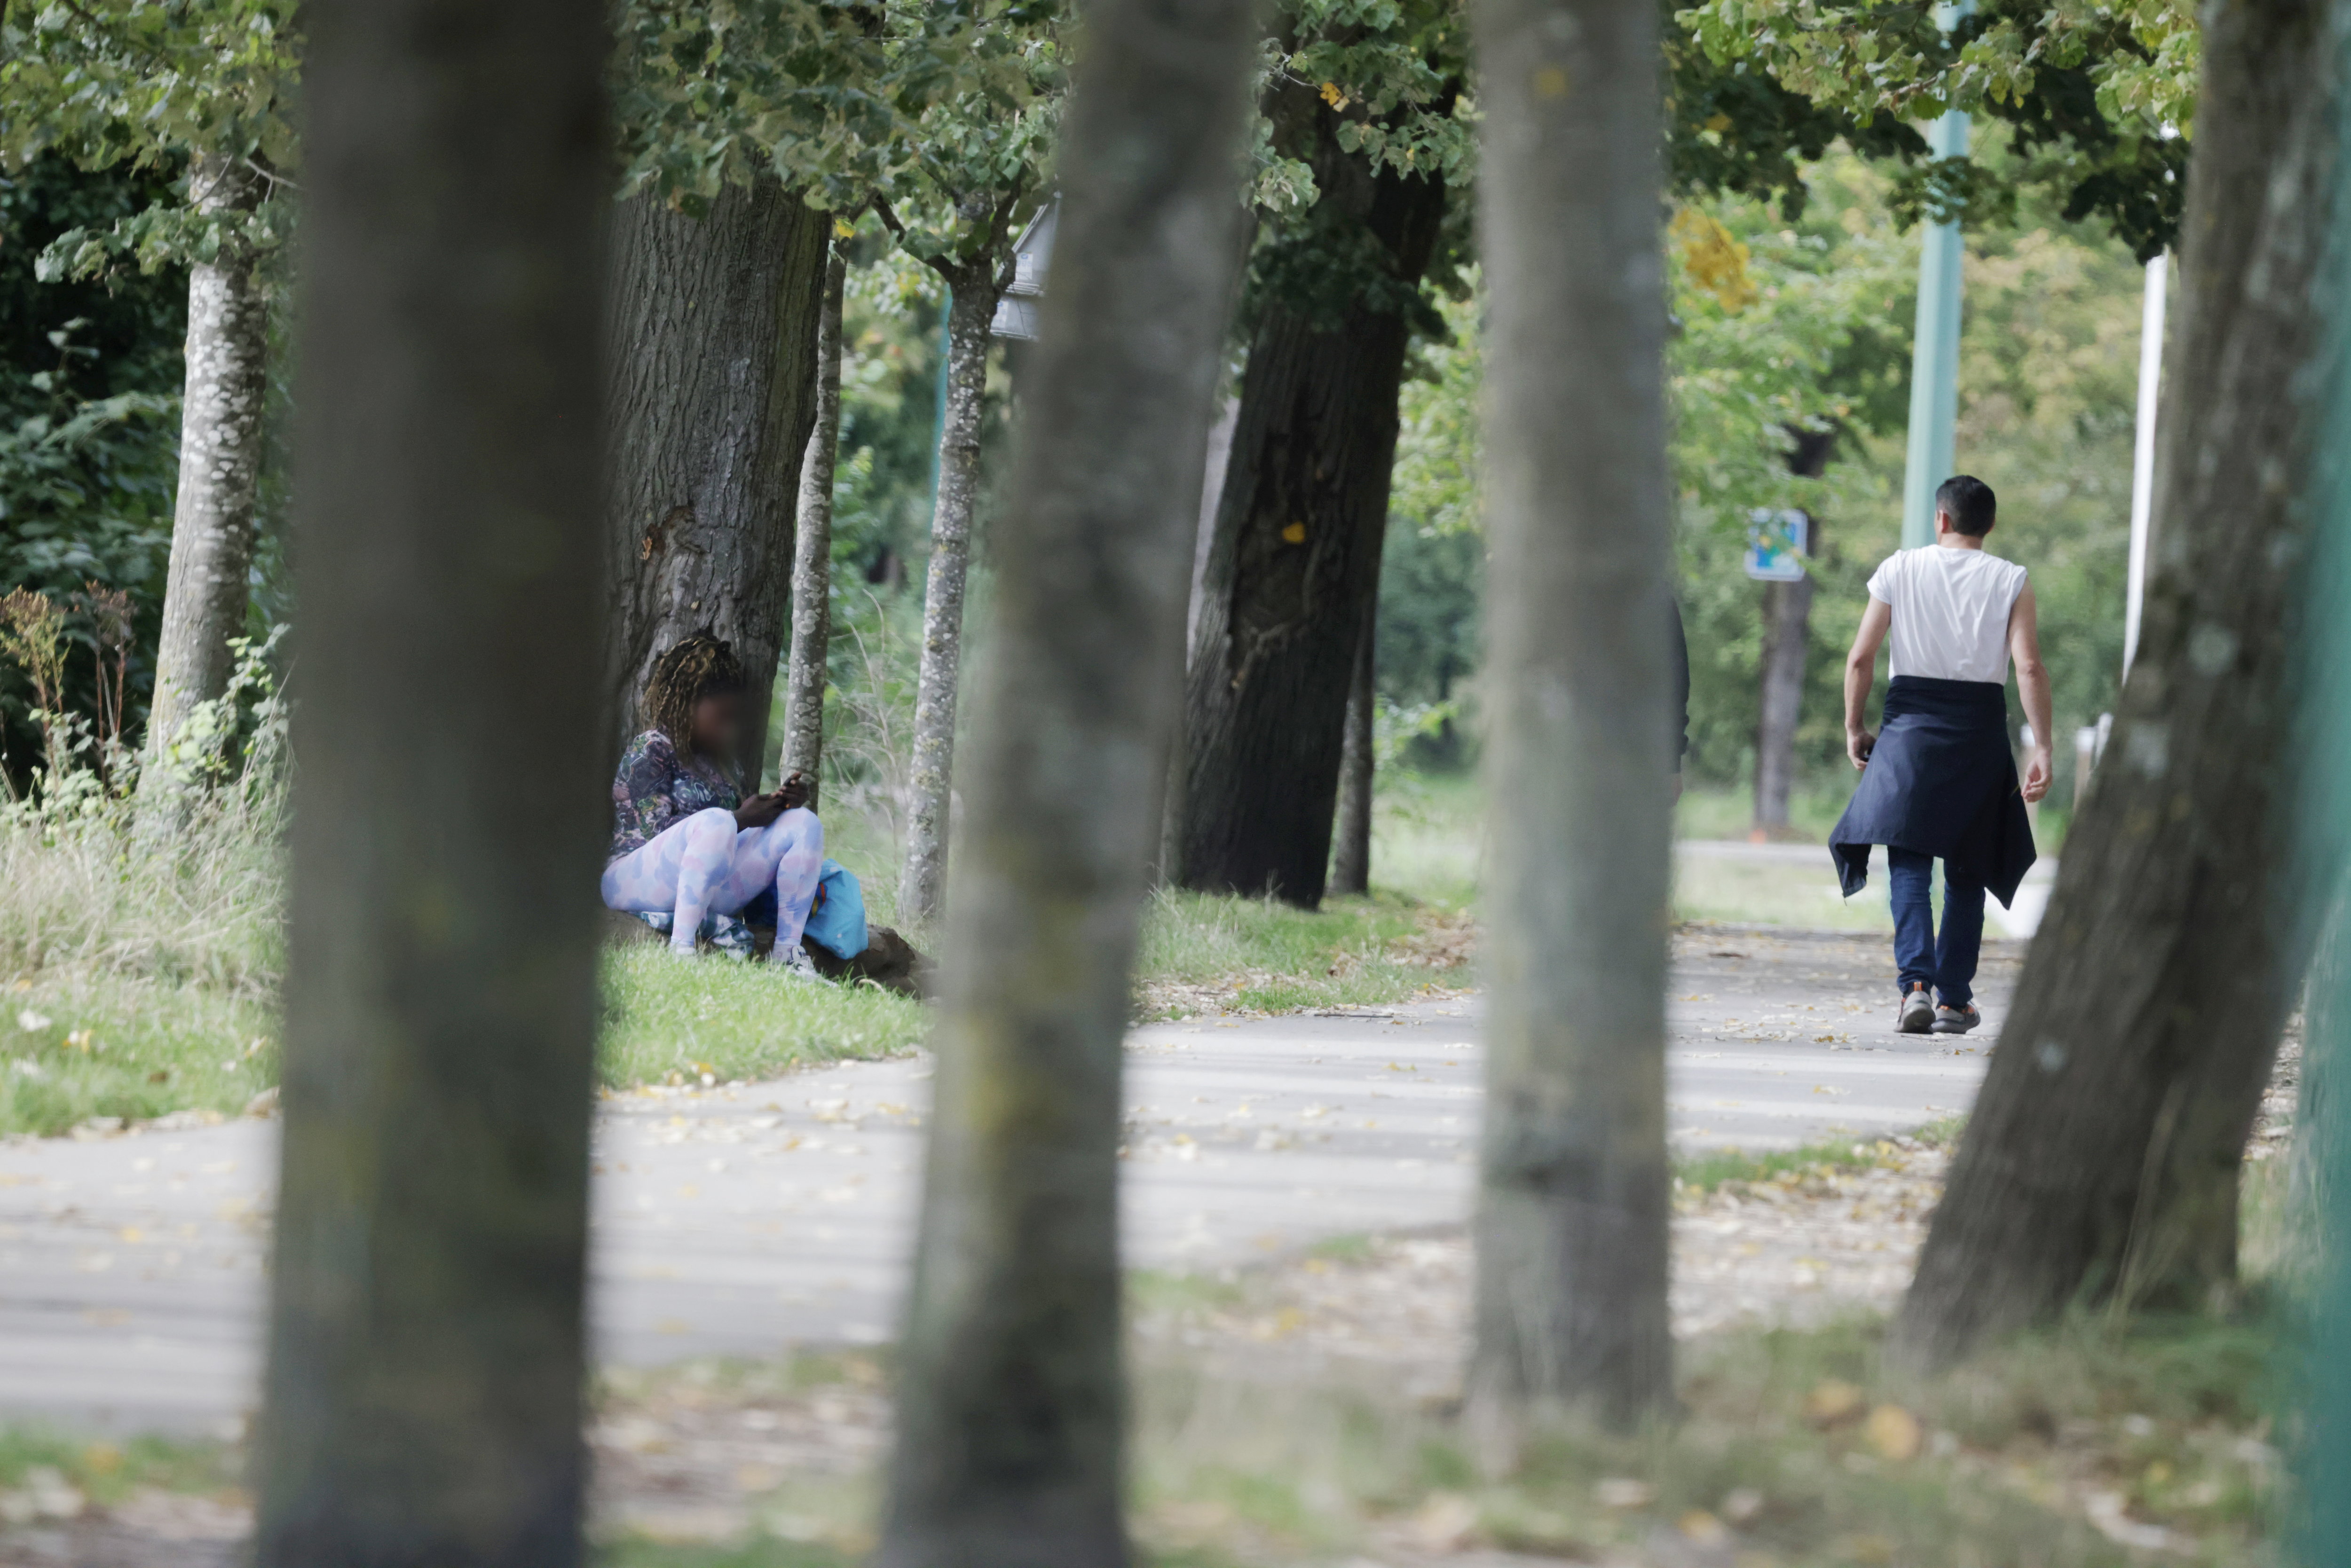 La prostitution, très visible par endroits dans le bois de Vincennes (ici fin septembre), fait partie des sujets d'inquiétude pour les familles qui s'y promènent. LP/Olivier Arandel